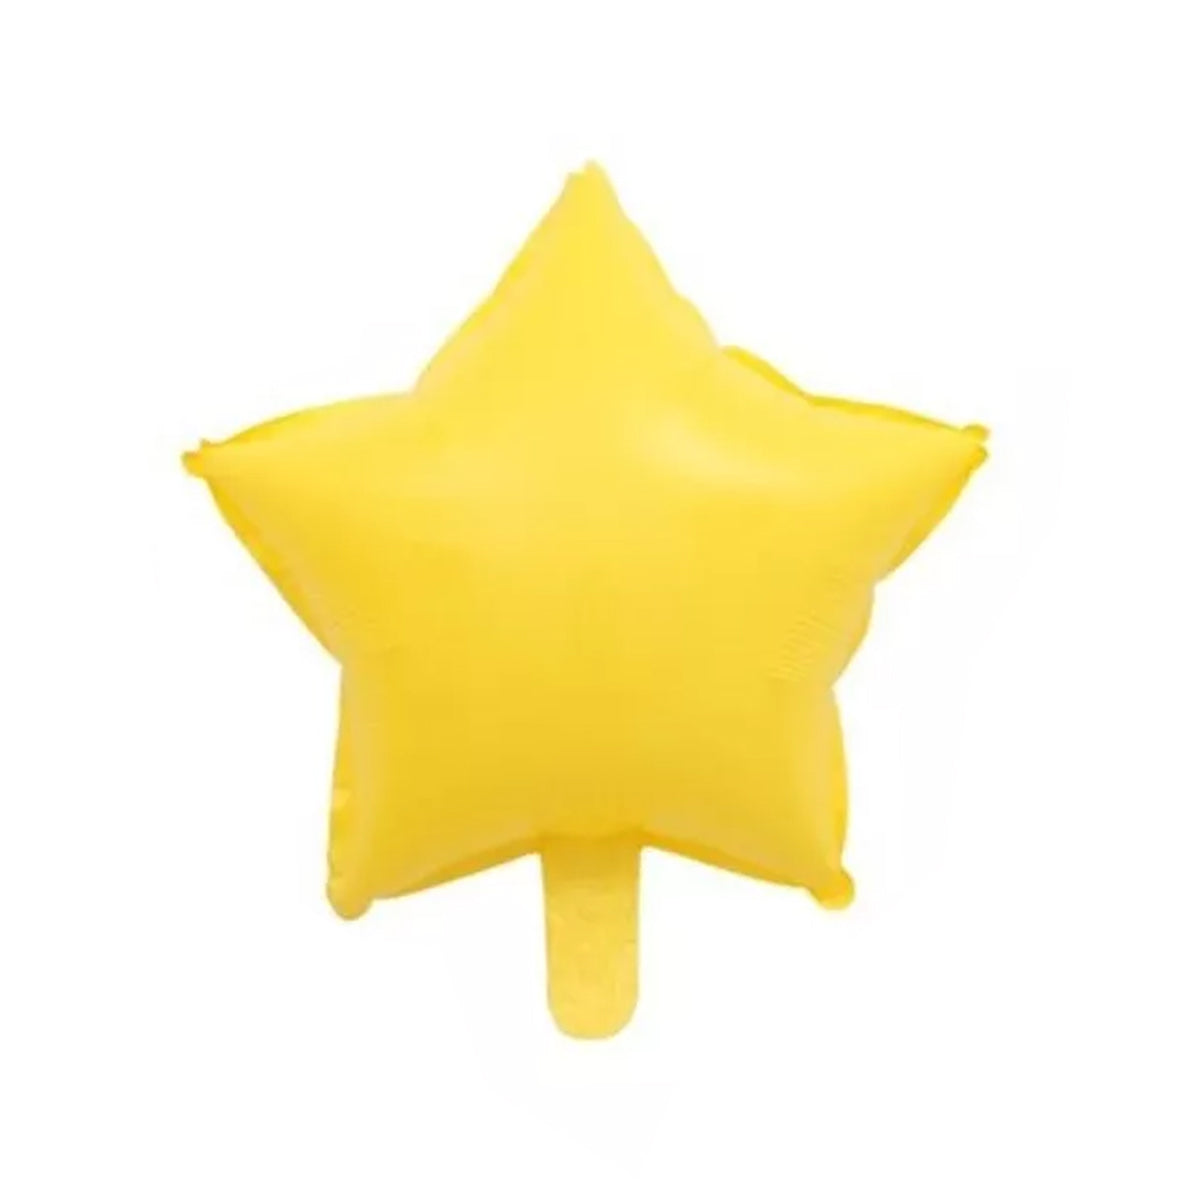 Globo Estrella Jelly (solo aire) - Pastel Amarillo